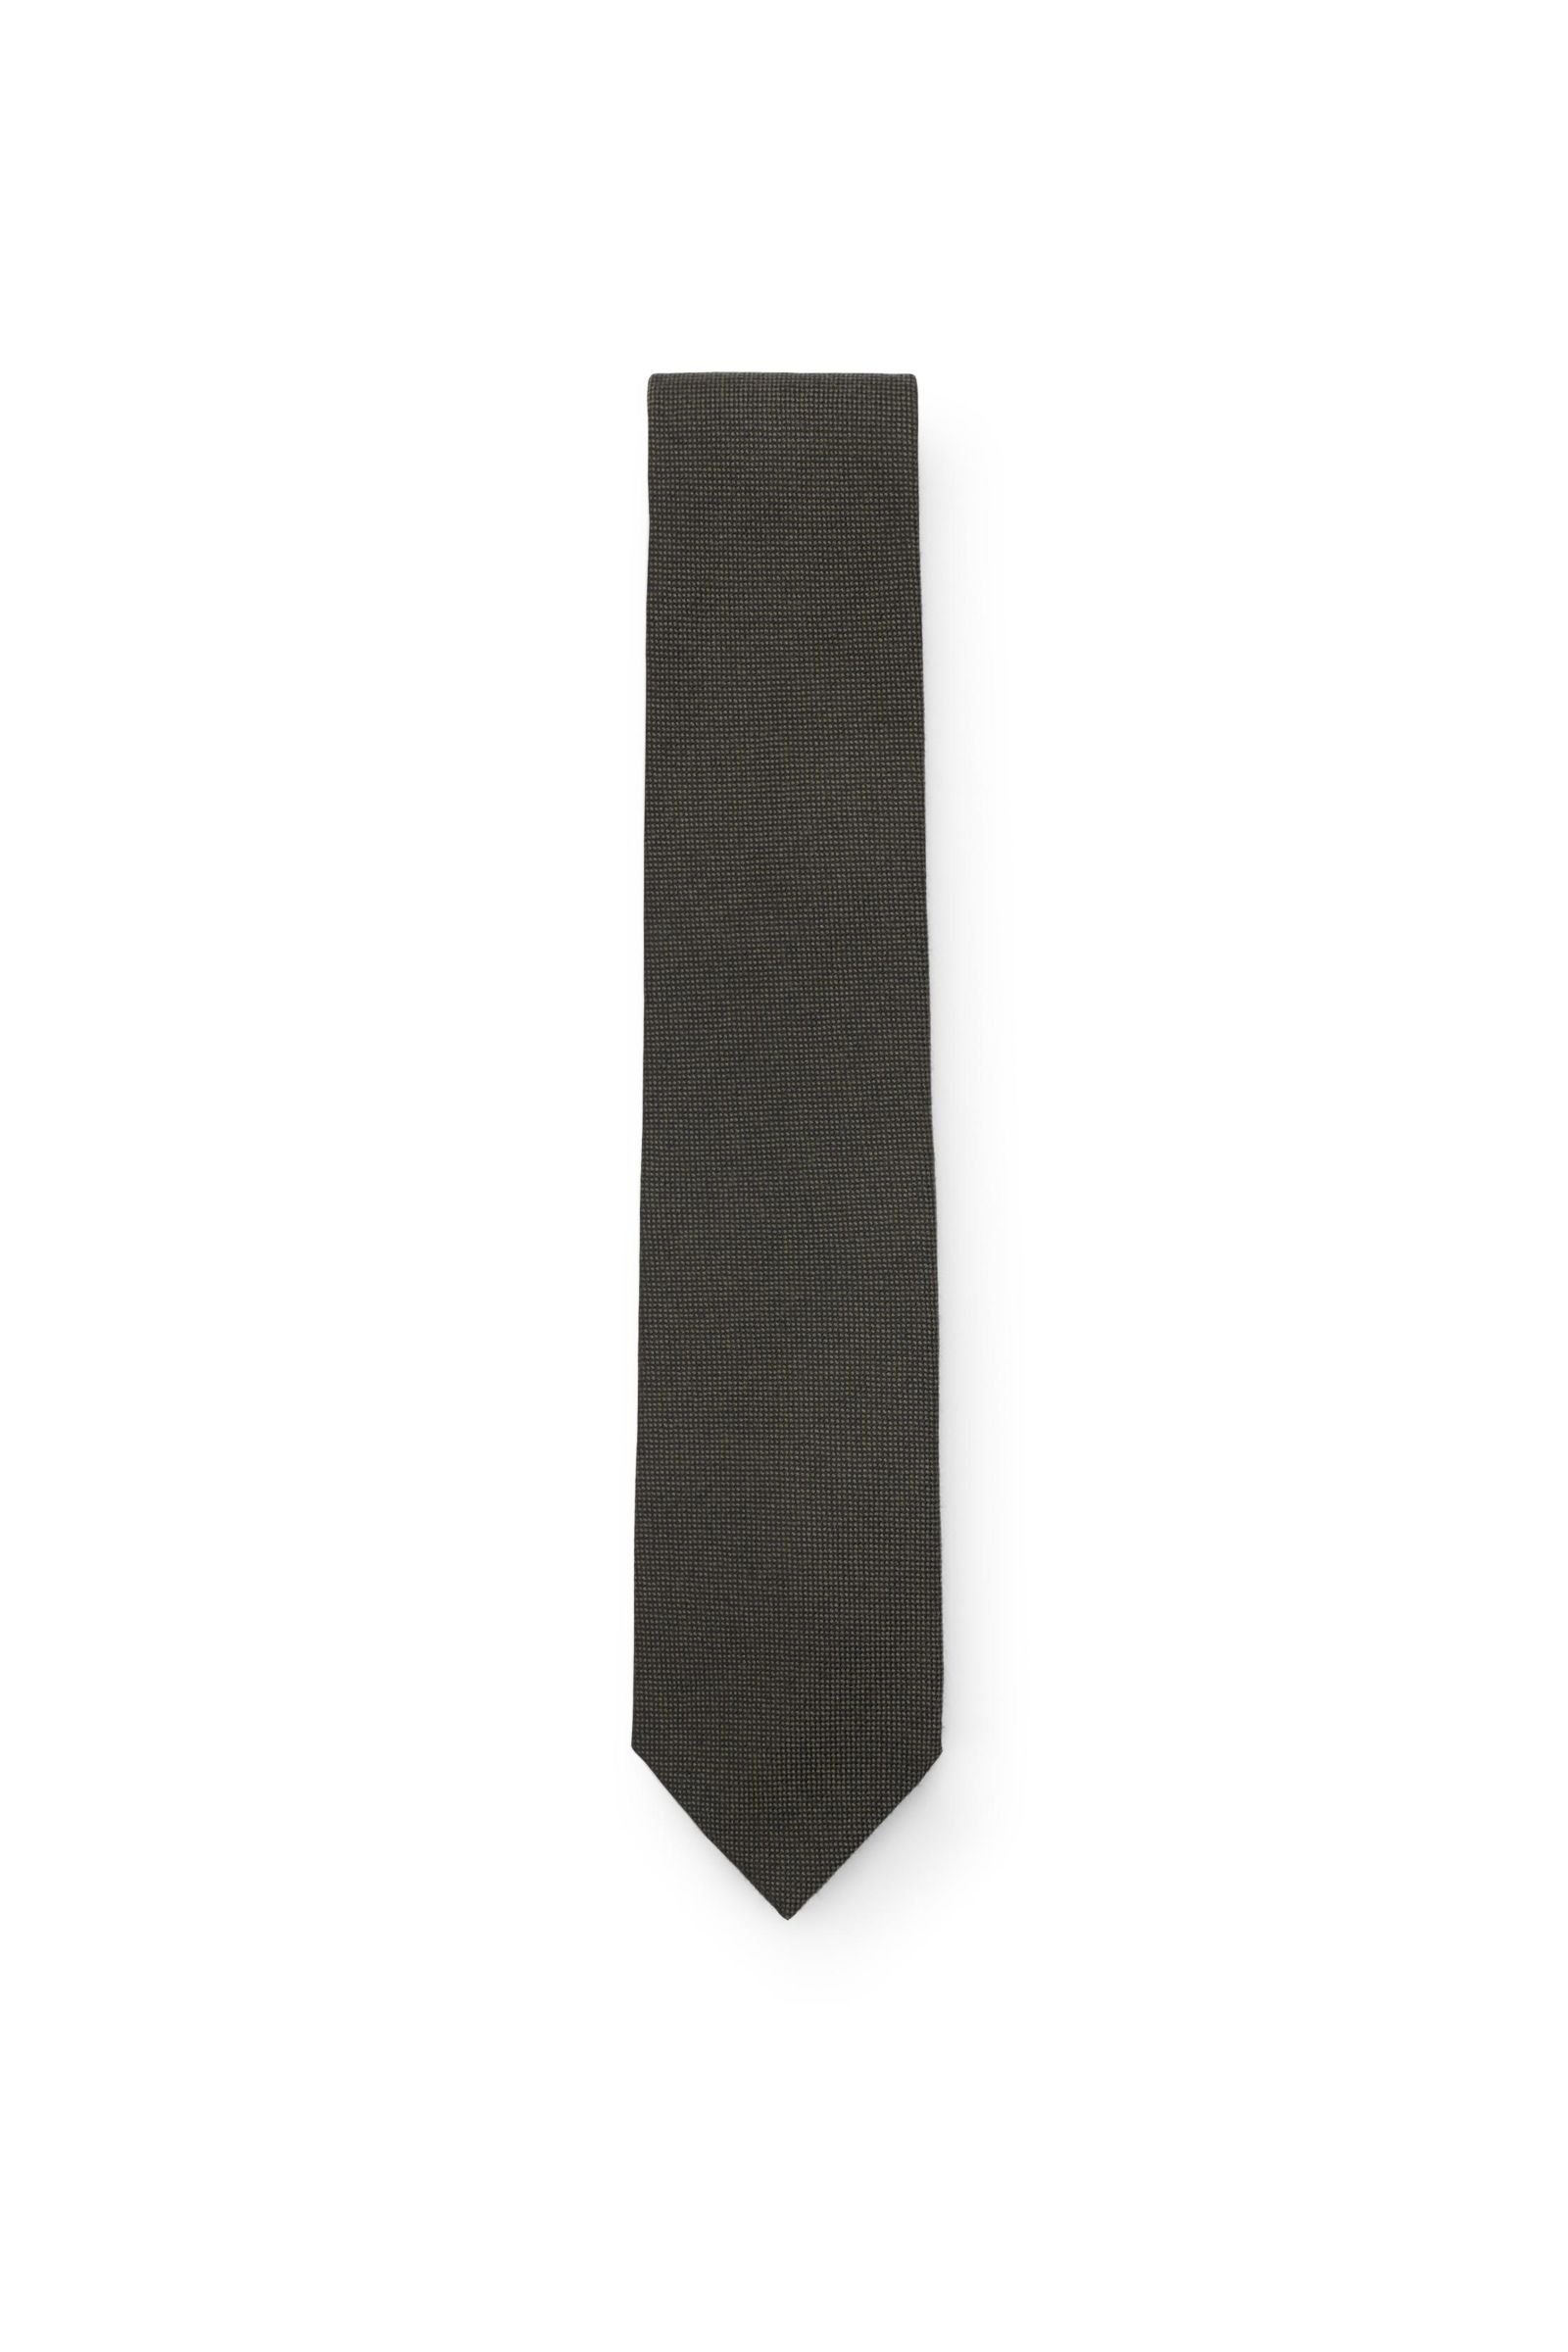 Cashmere tie dark olive